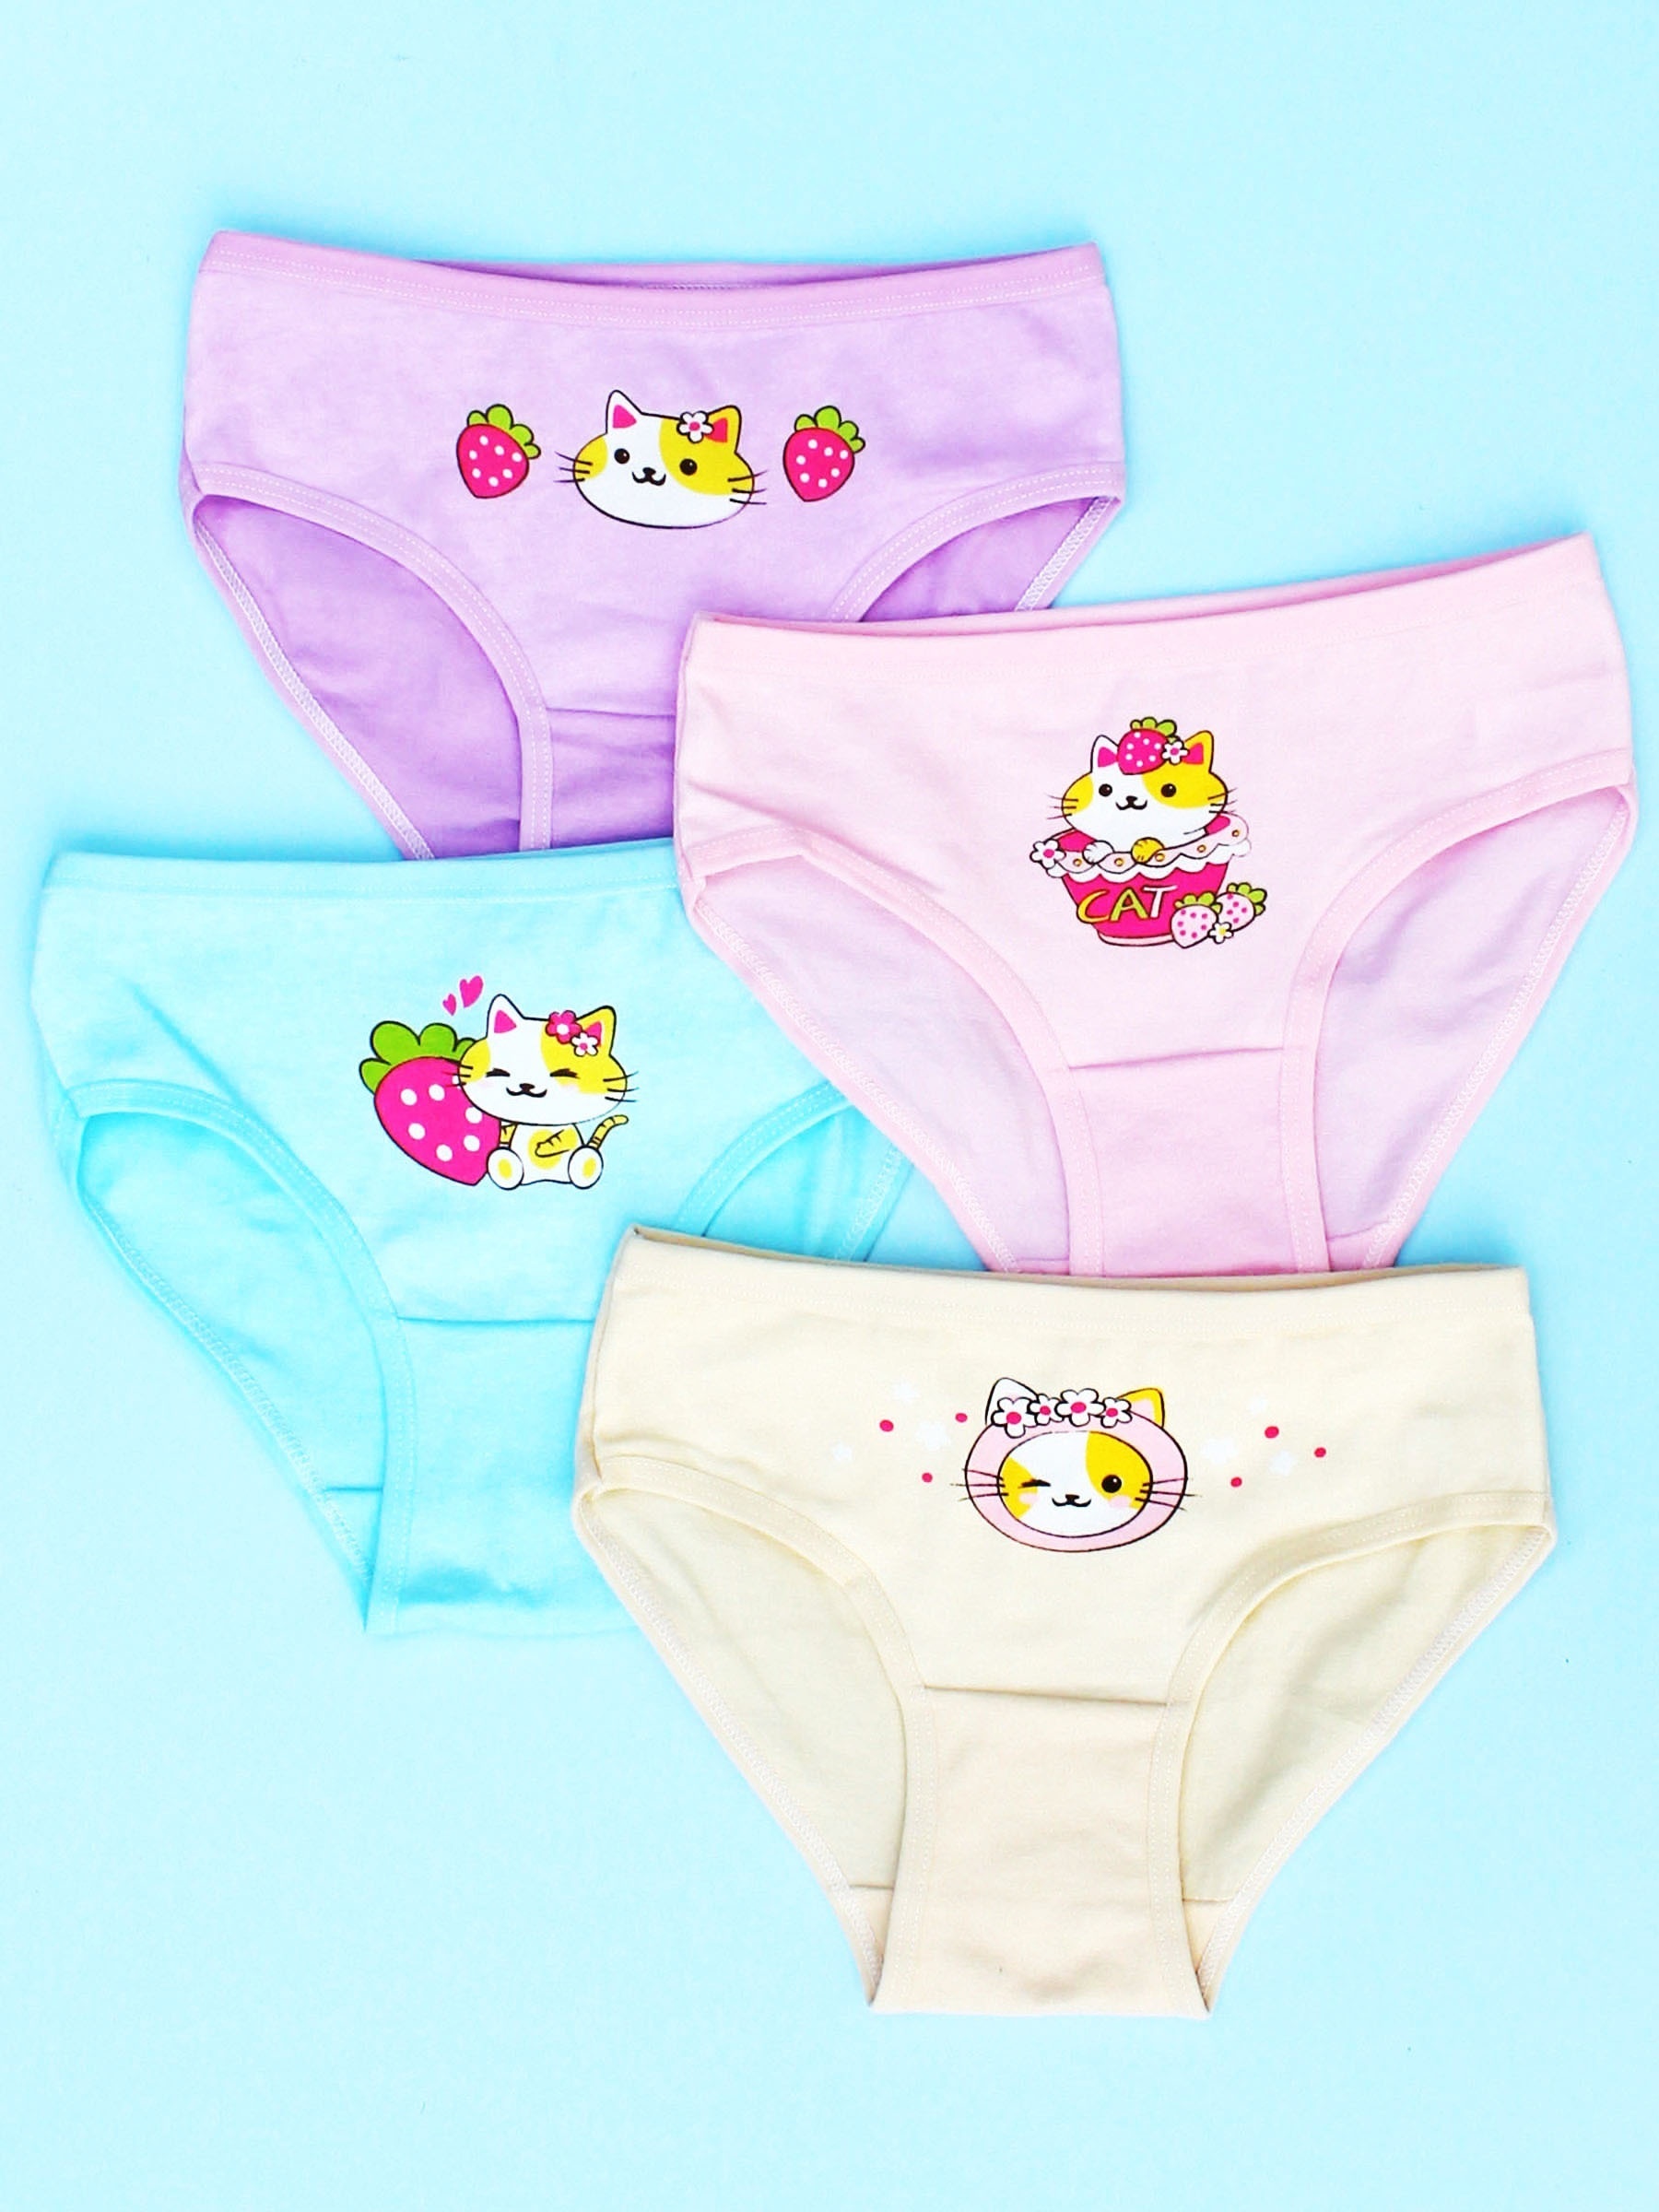 3/6/Cotton Kids Underwear Girls Cute Cartoon Design Bow For